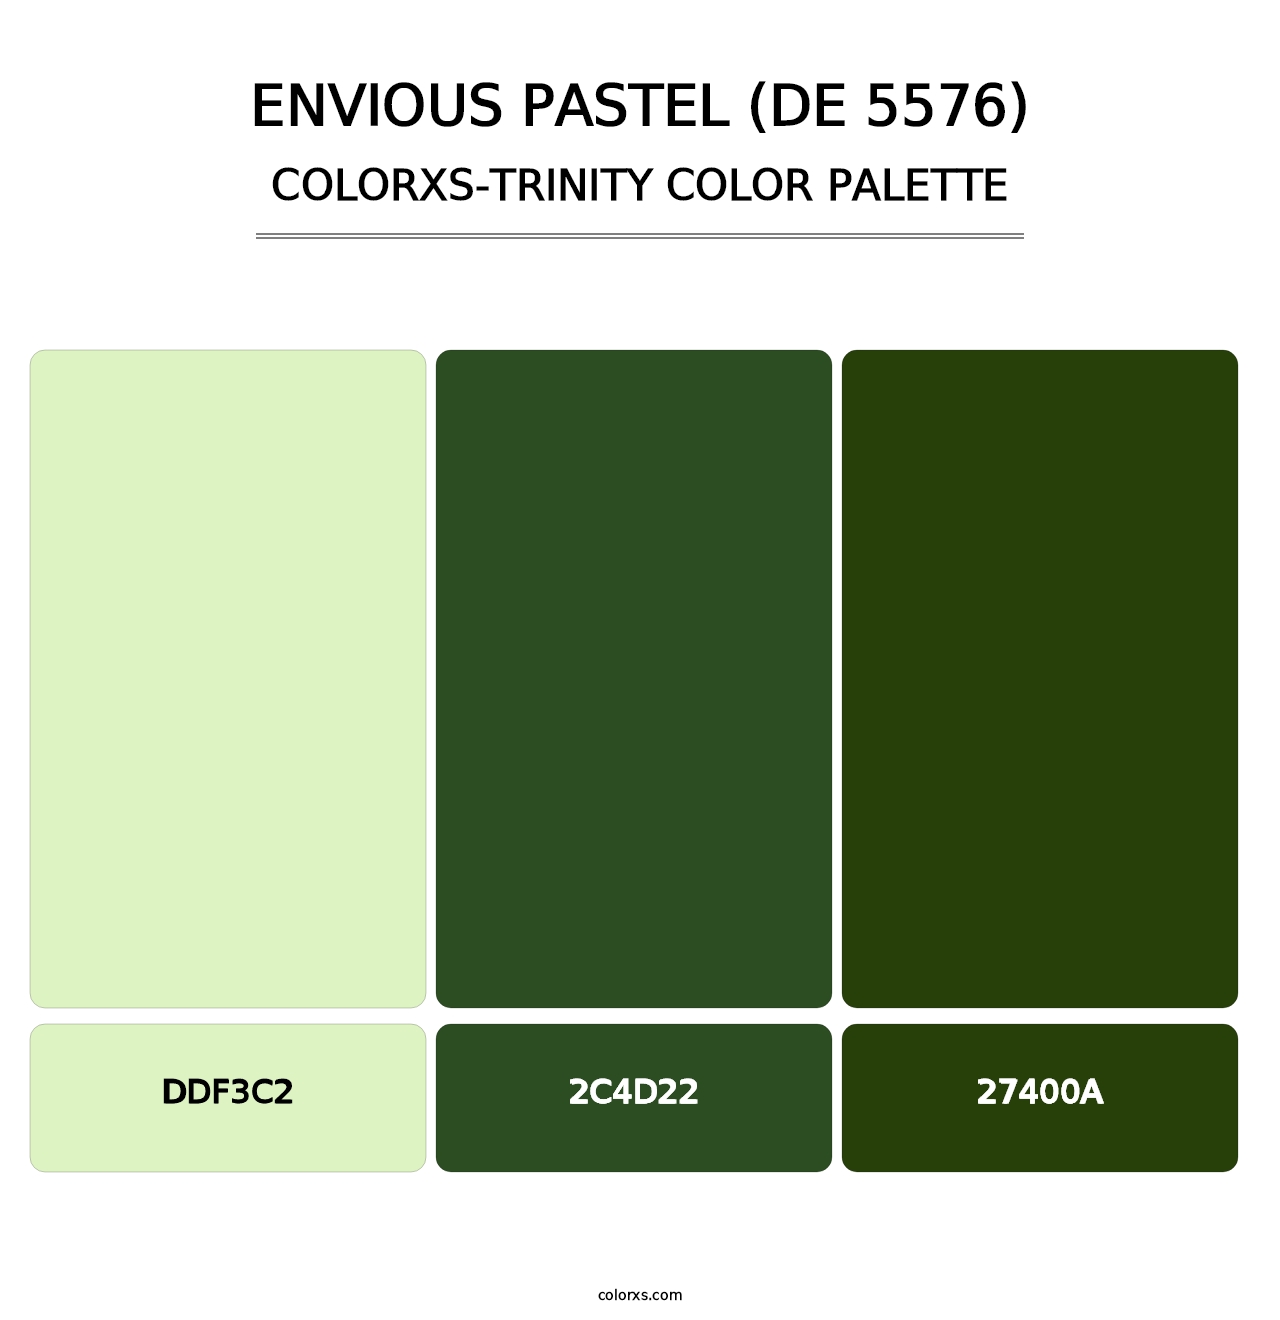 Envious Pastel (DE 5576) - Colorxs Trinity Palette